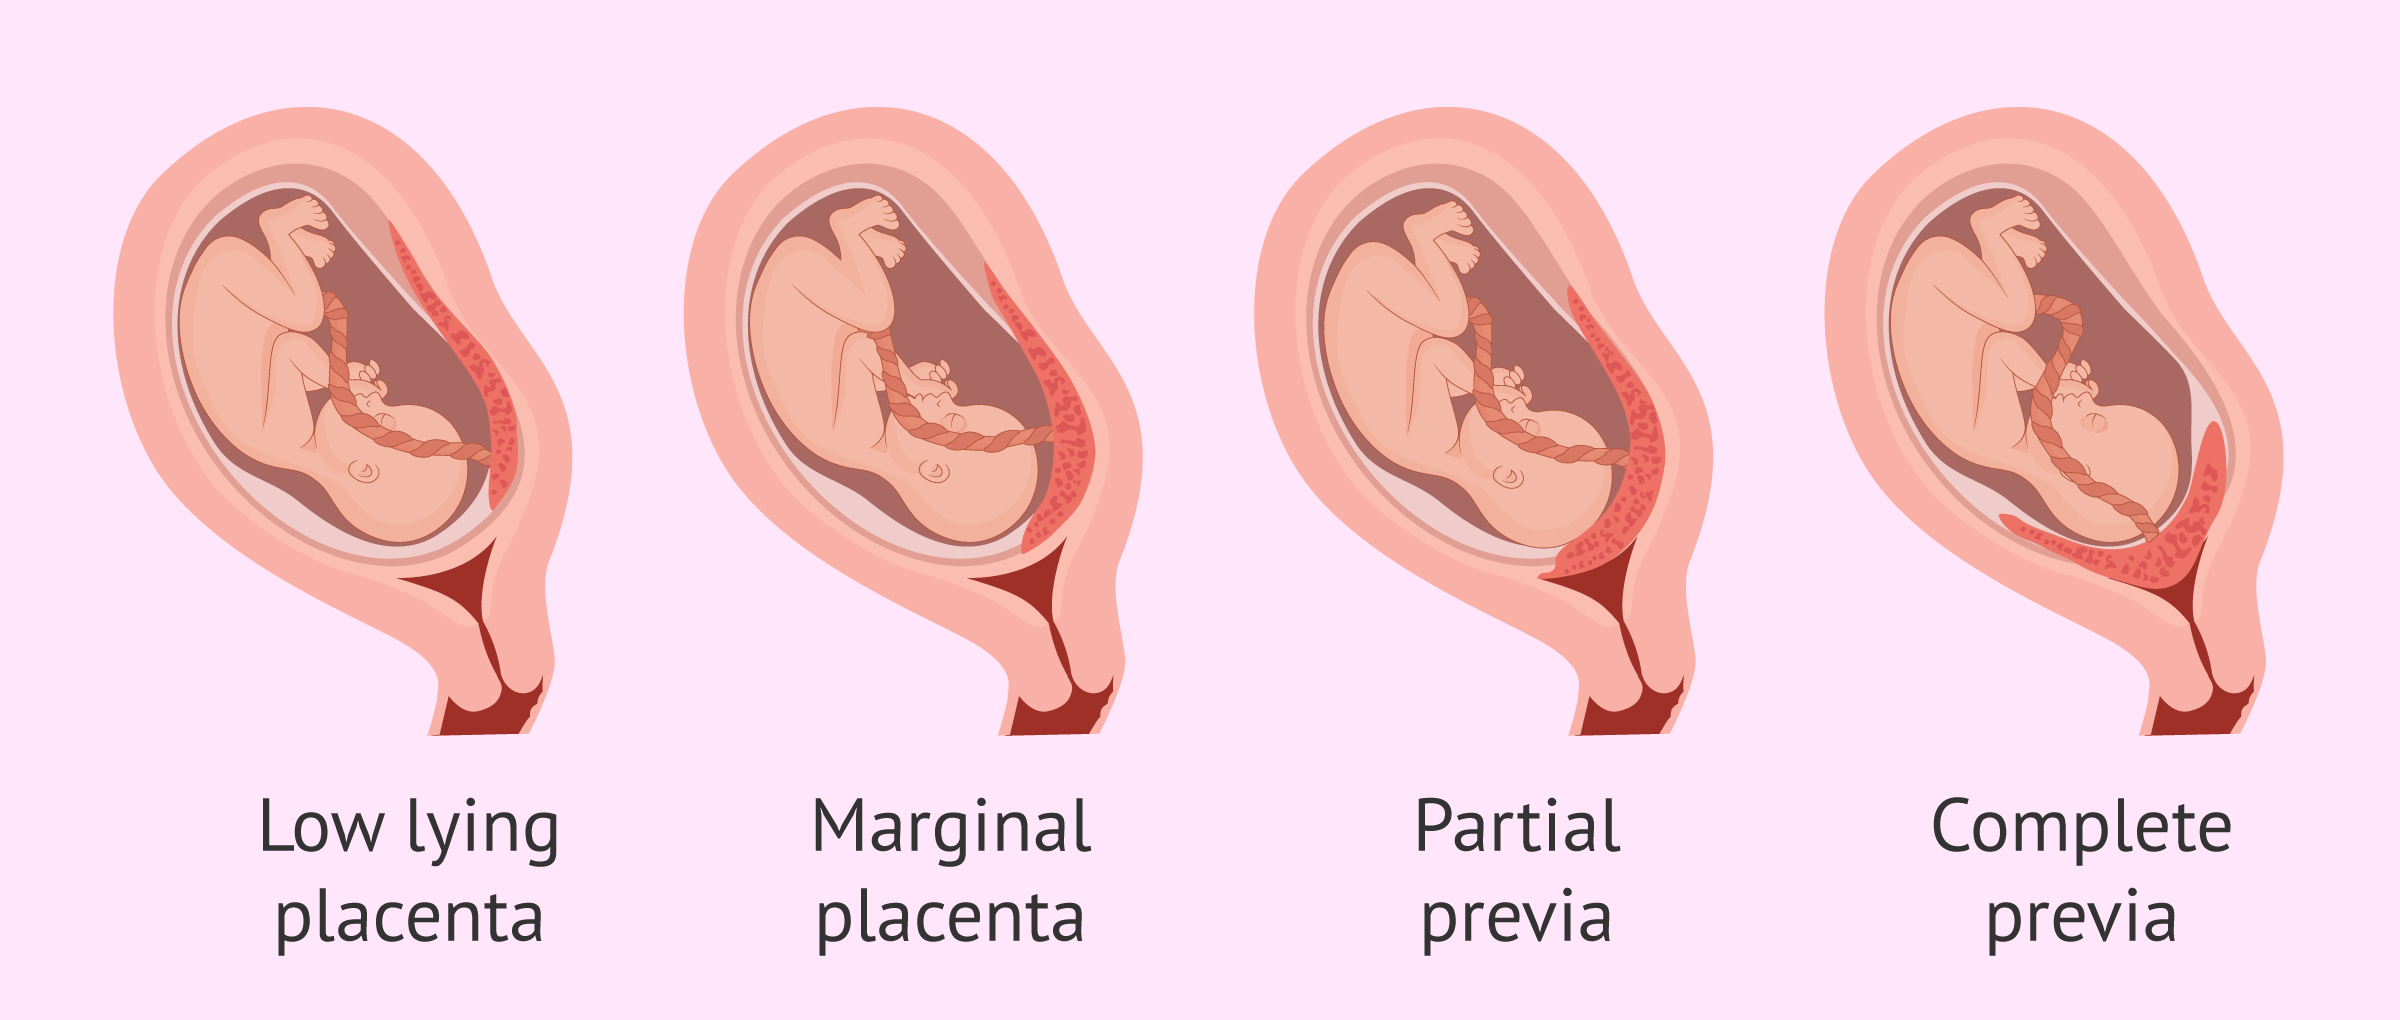 low lying placenta